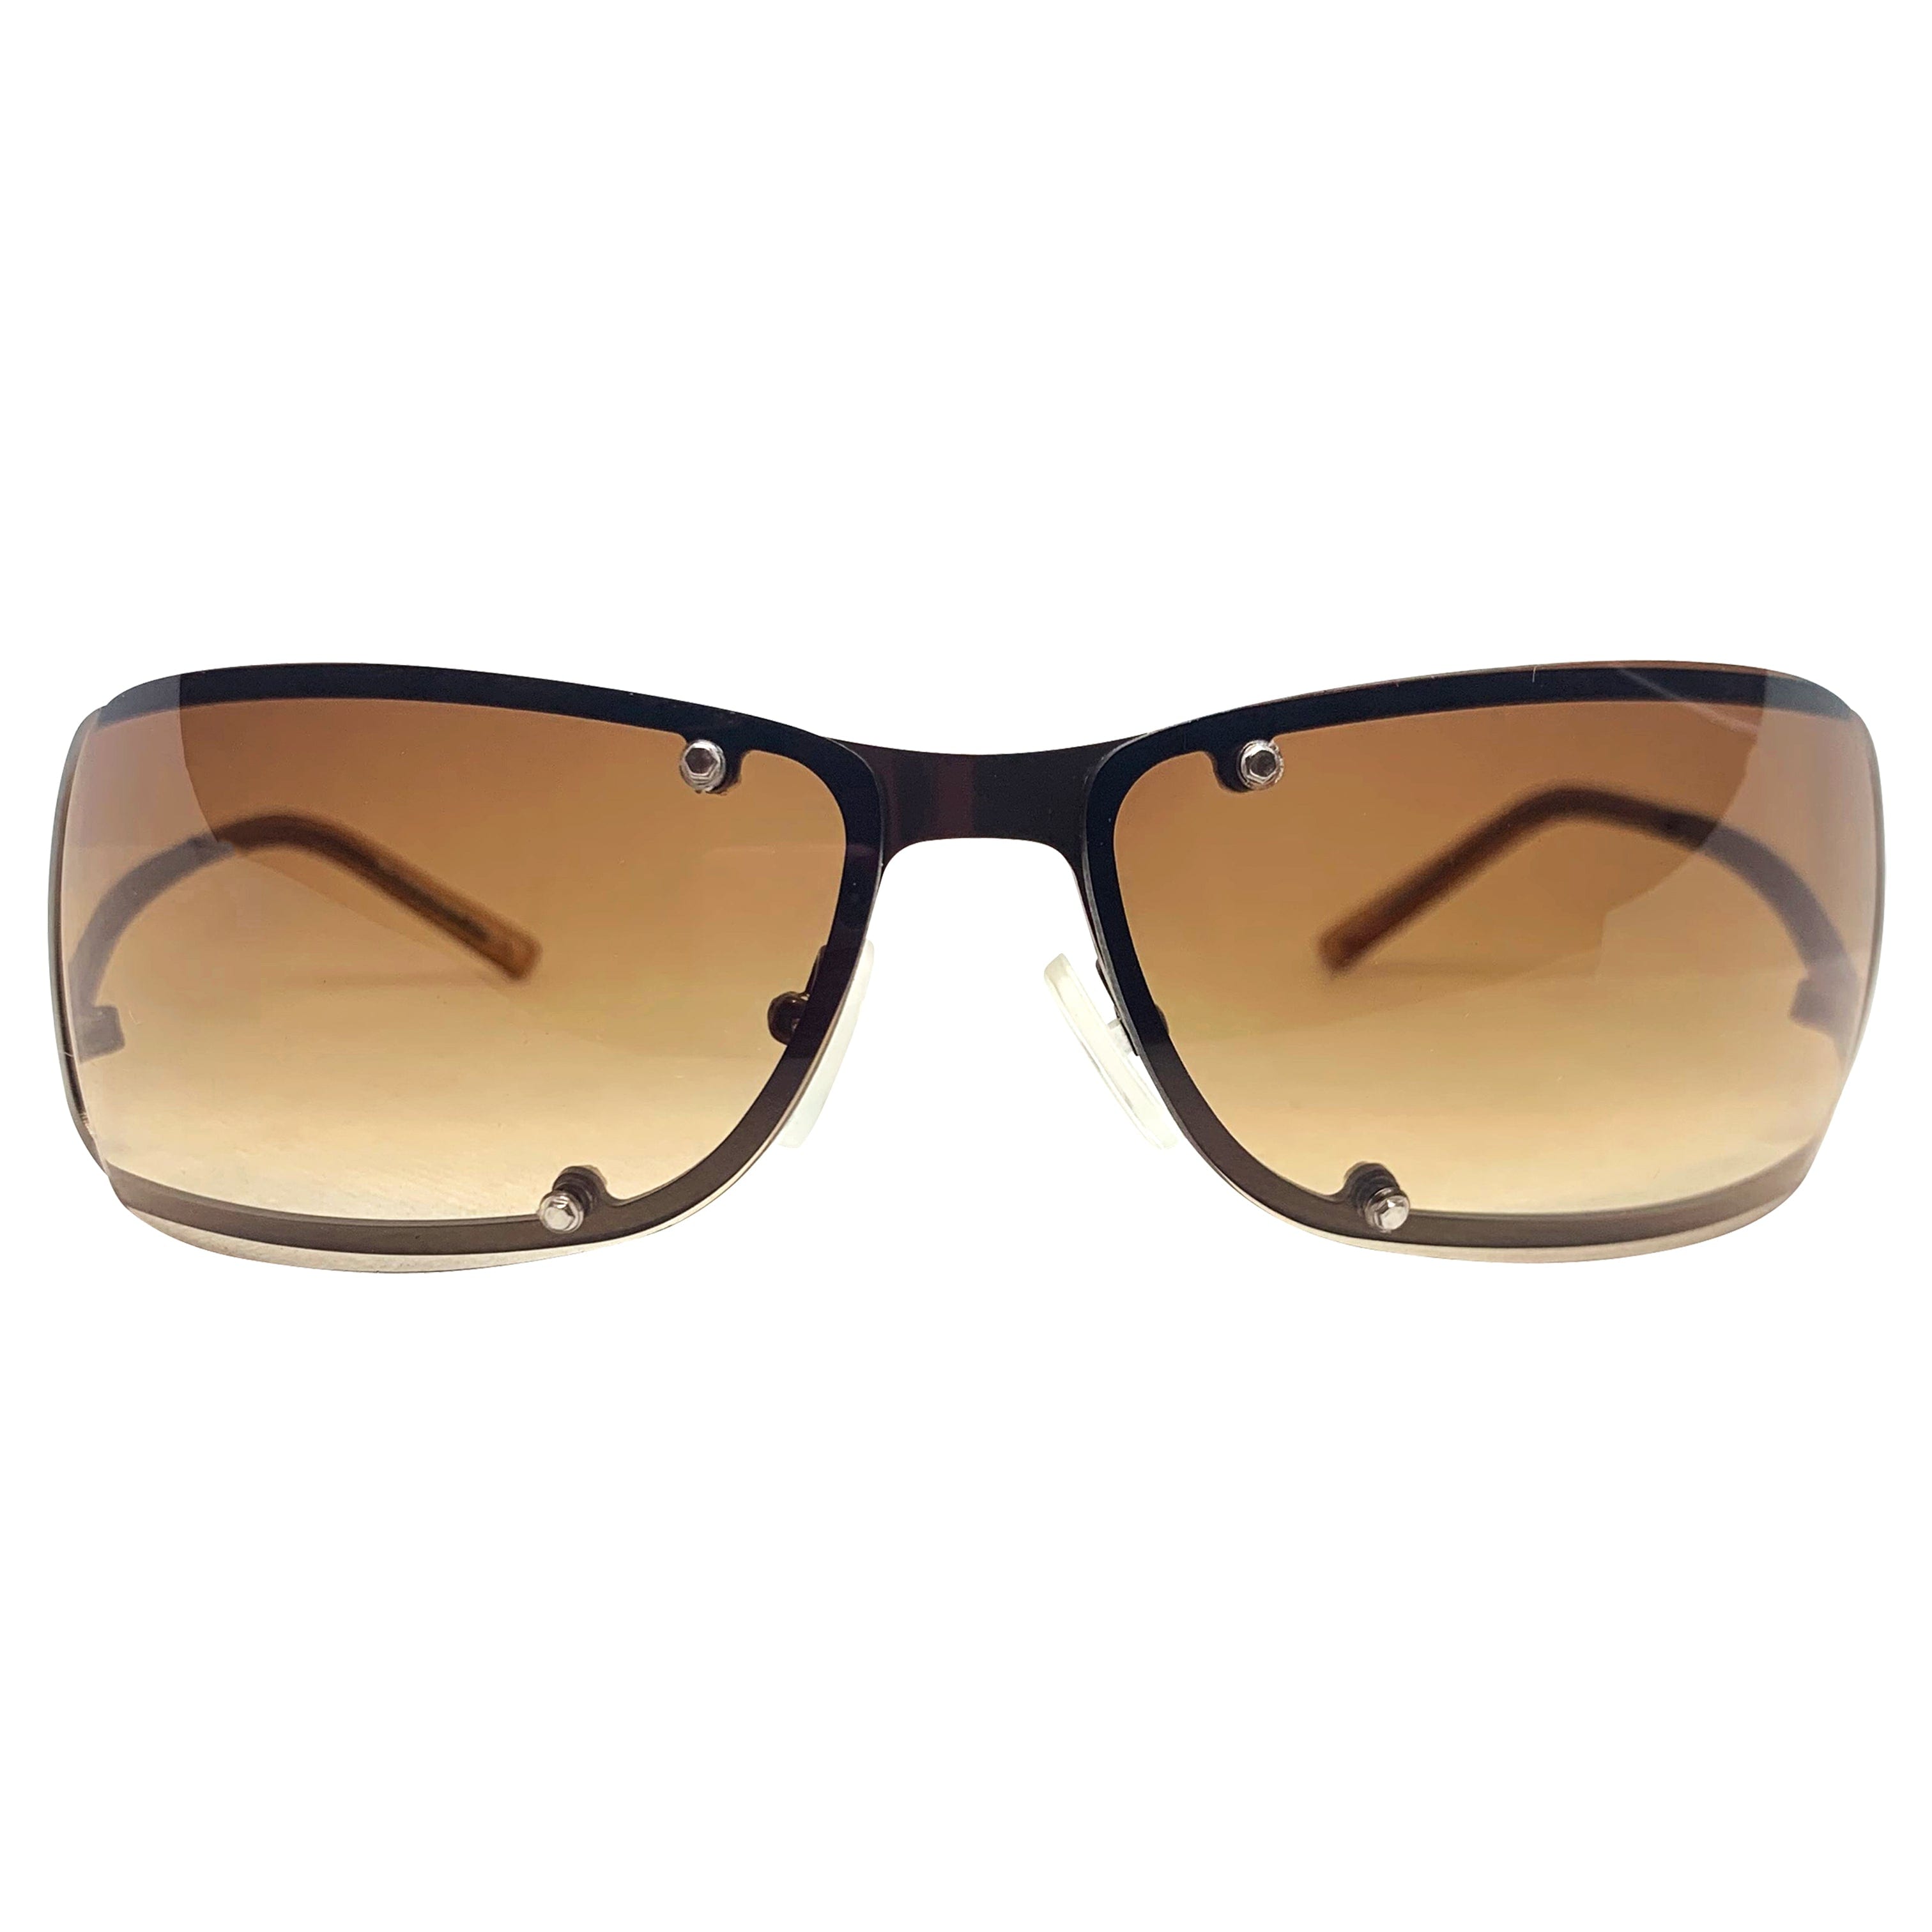 RIDER Amber/Copper Sunglasses